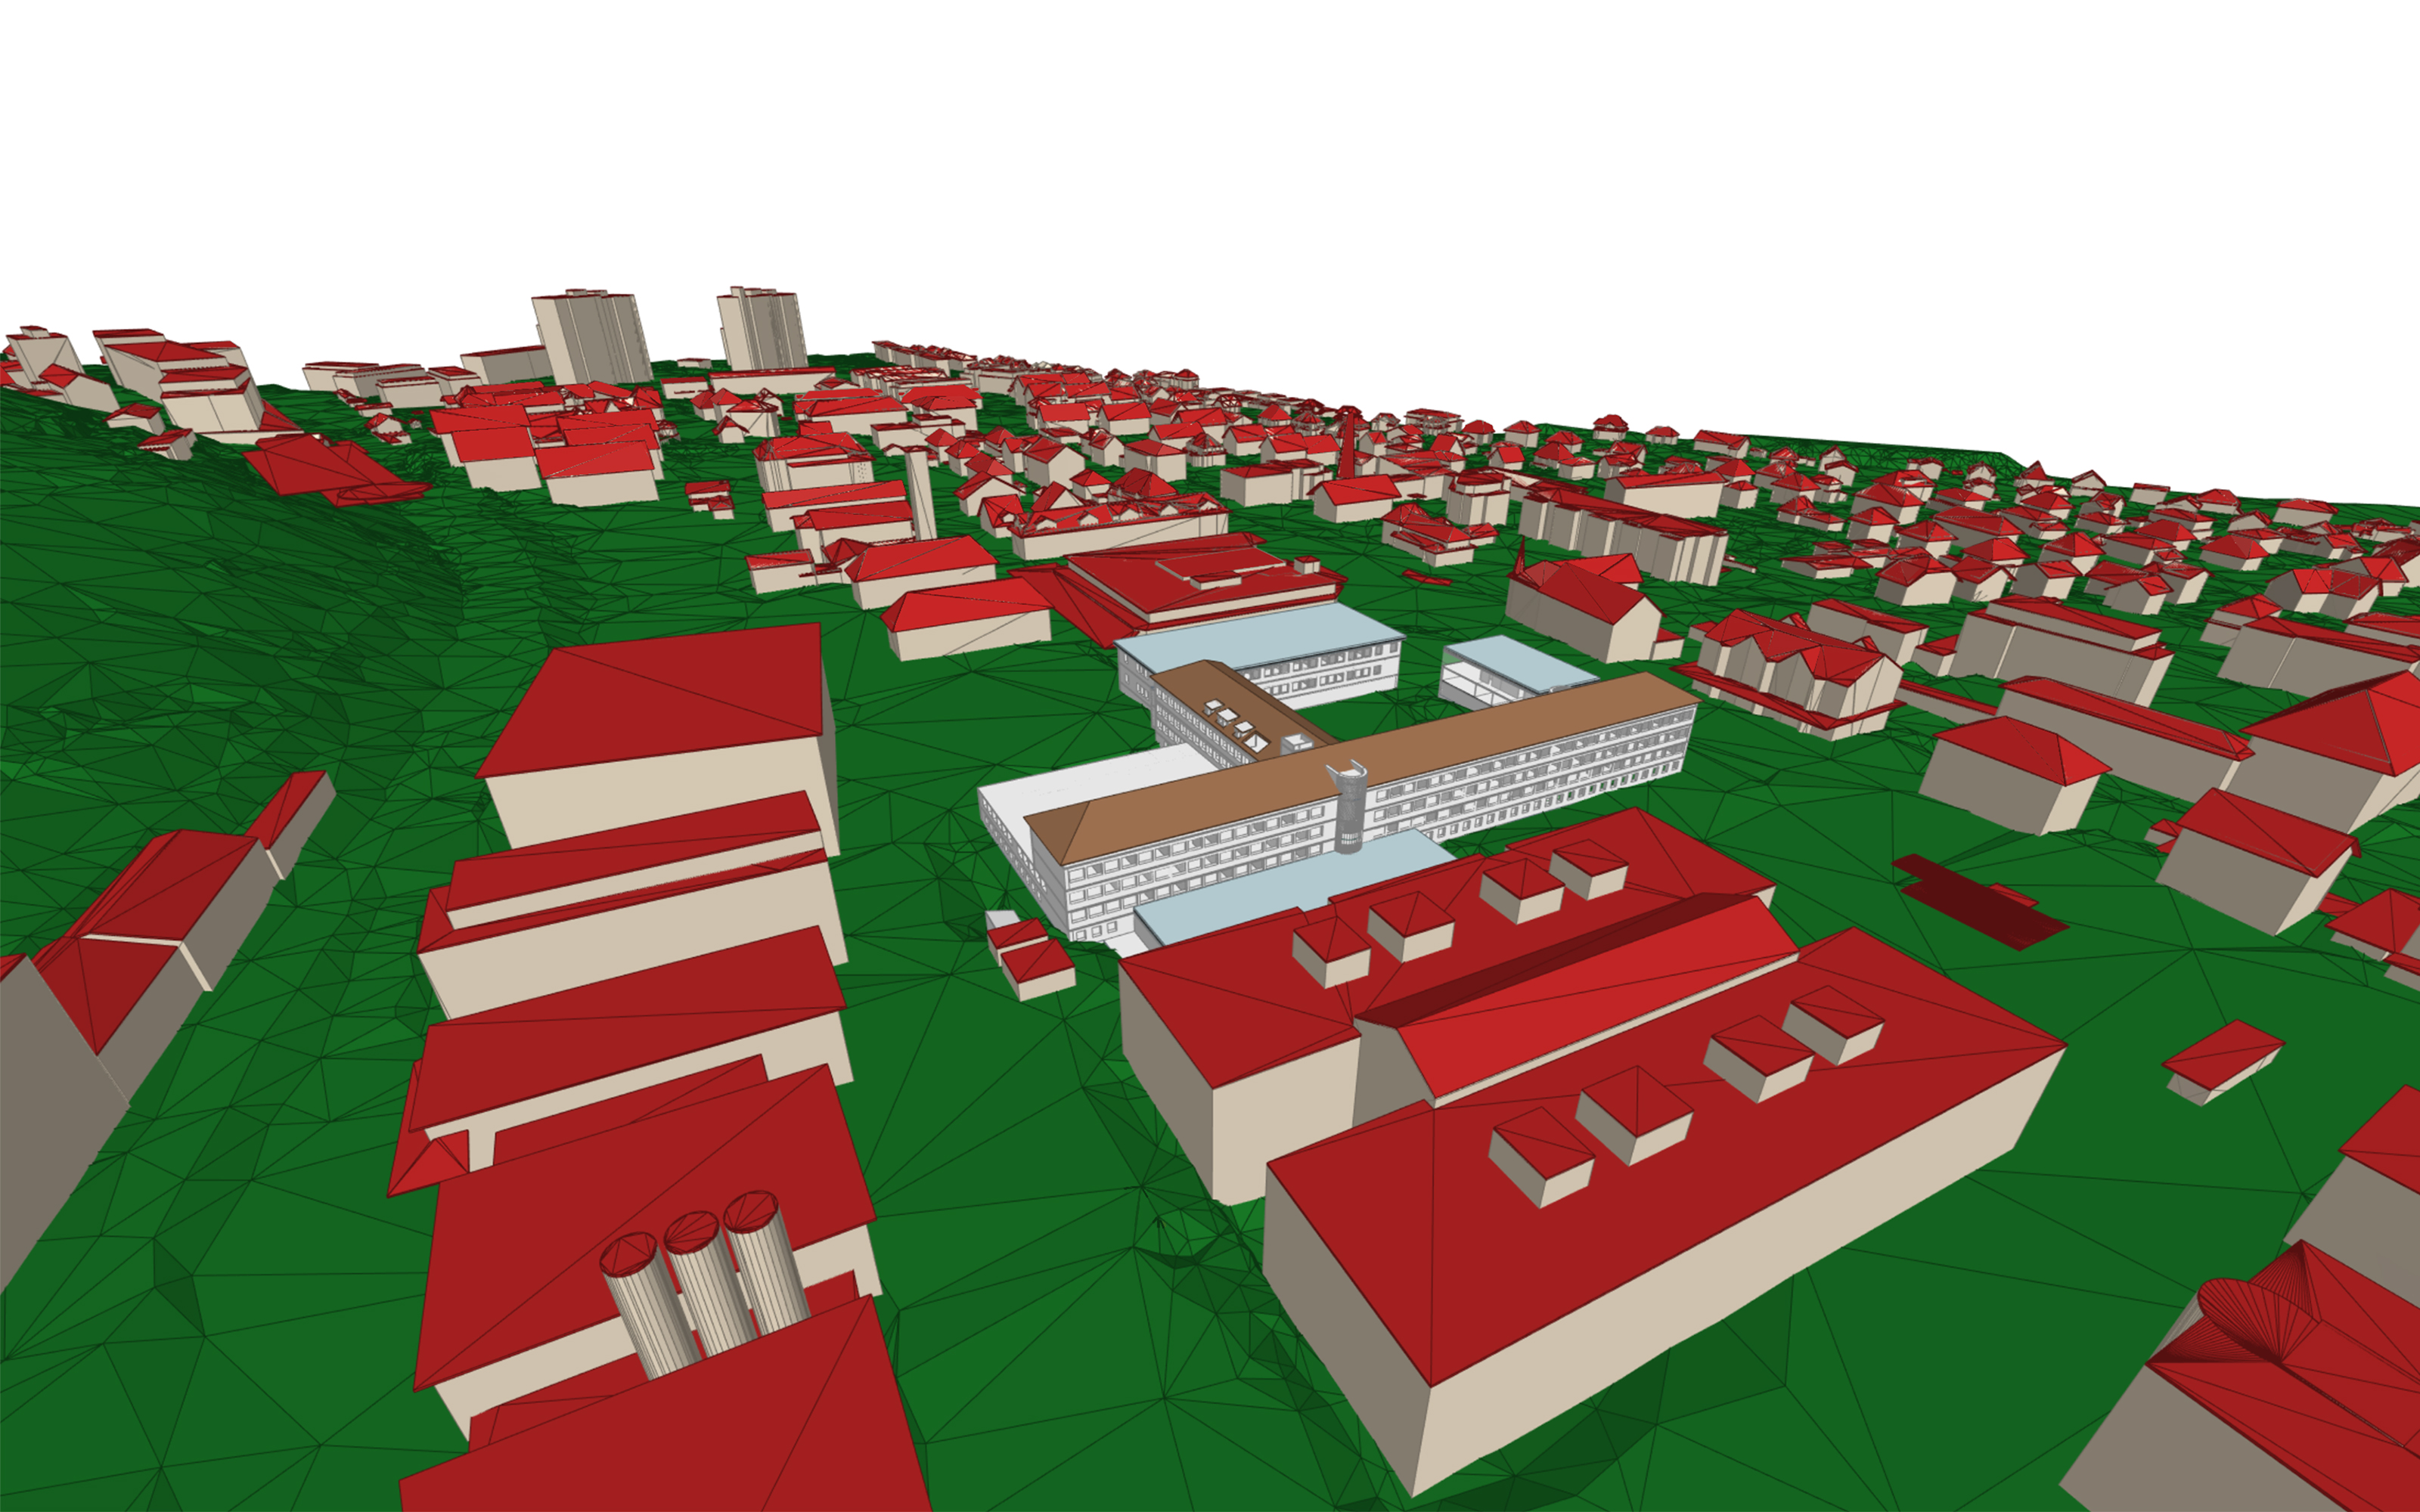  Visualizzazione 3D di un'area urbana vista dall'alto